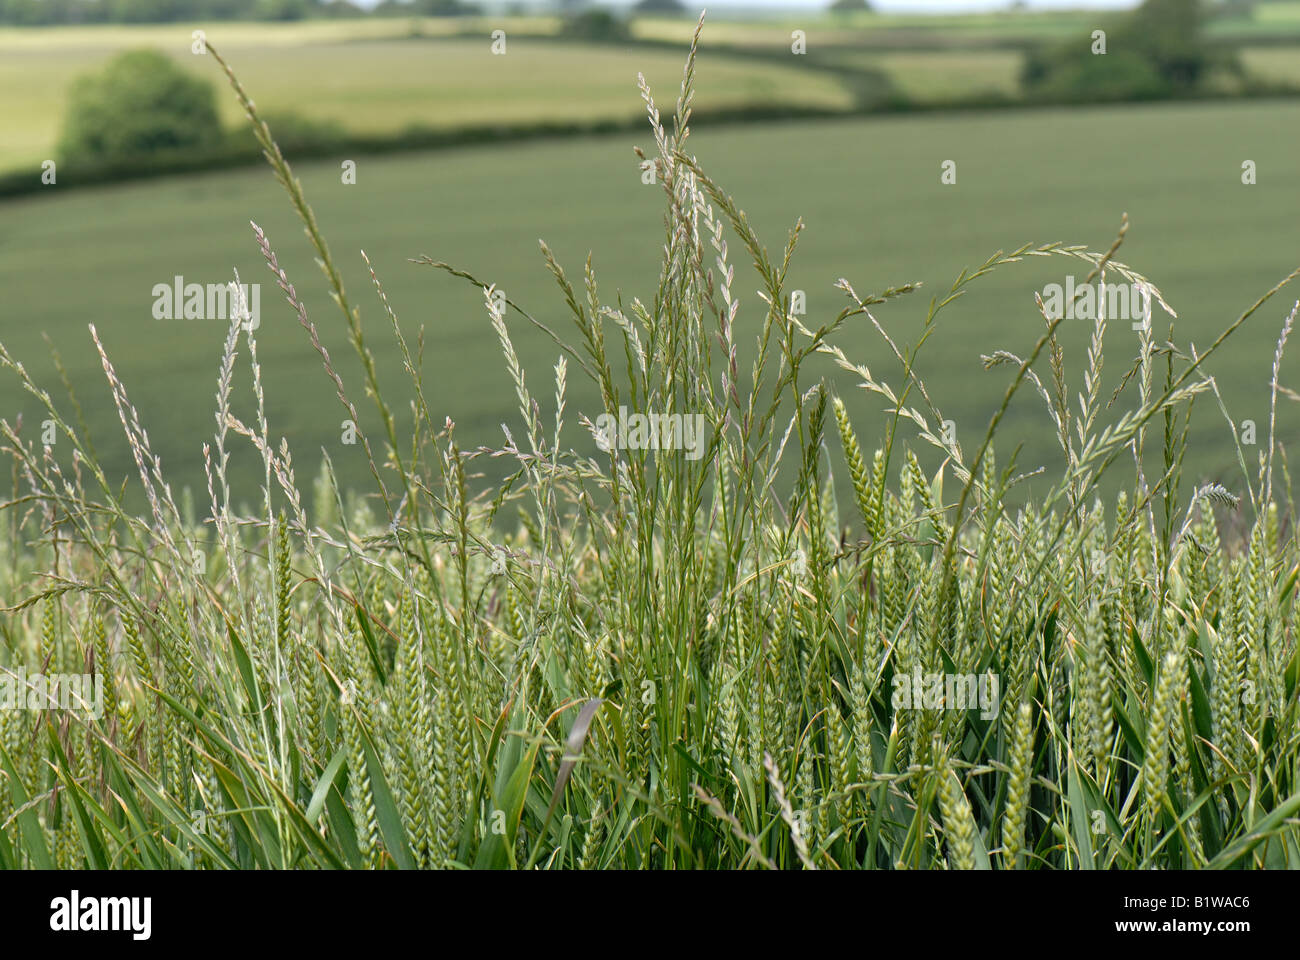 Le ray-grass vivace Lolium perenne fleurs de graminées dans une récolte de blé en épi Banque D'Images